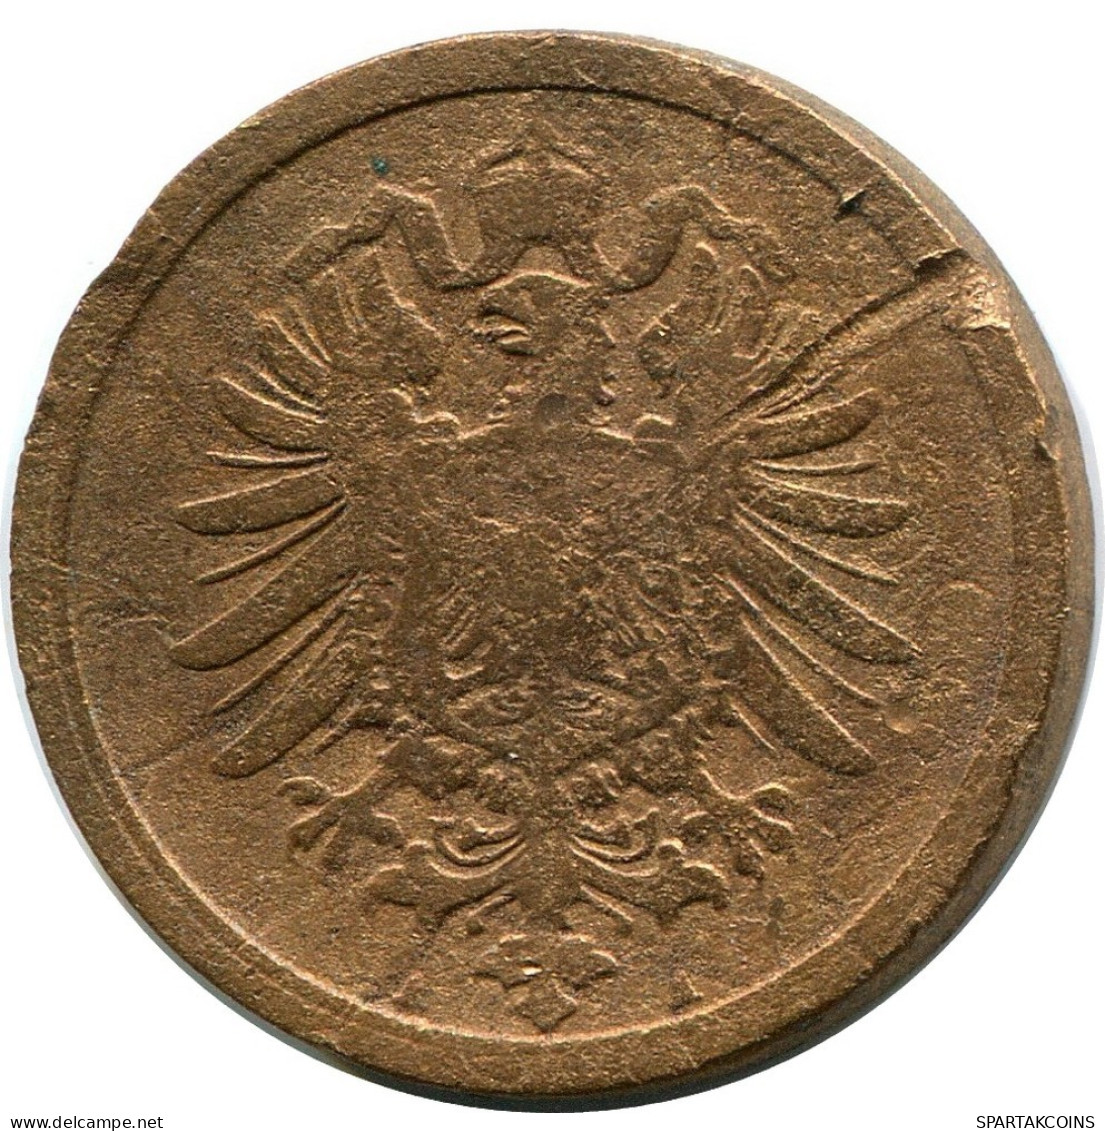 2 PFENNIG 1875 A GERMANY Coin #DB826.U.A - 2 Pfennig